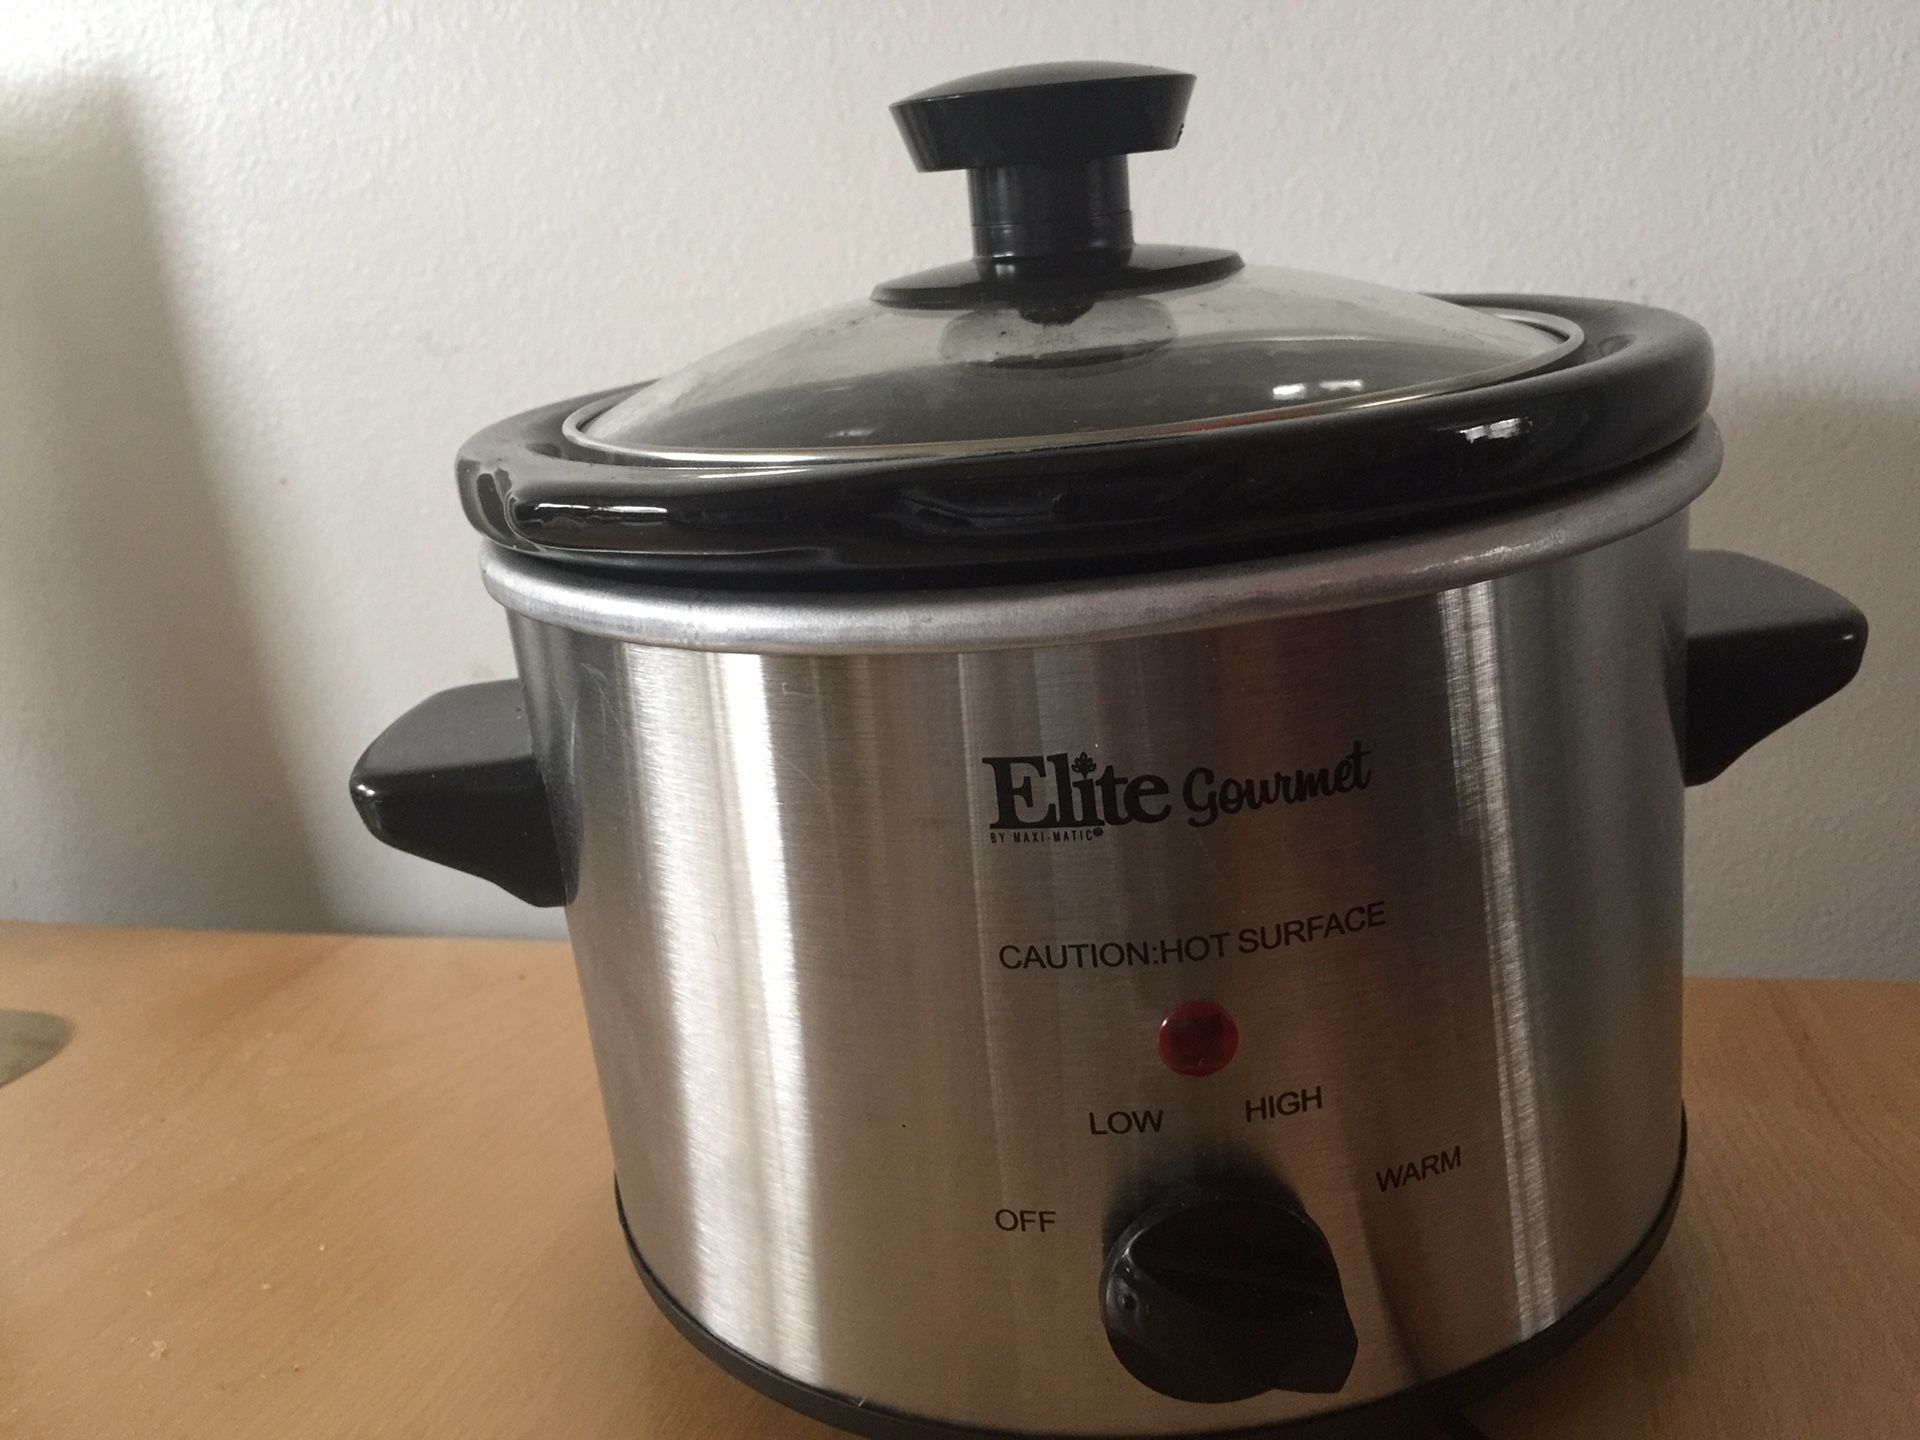 Elite Gourmet small 1.5q crock pot mini